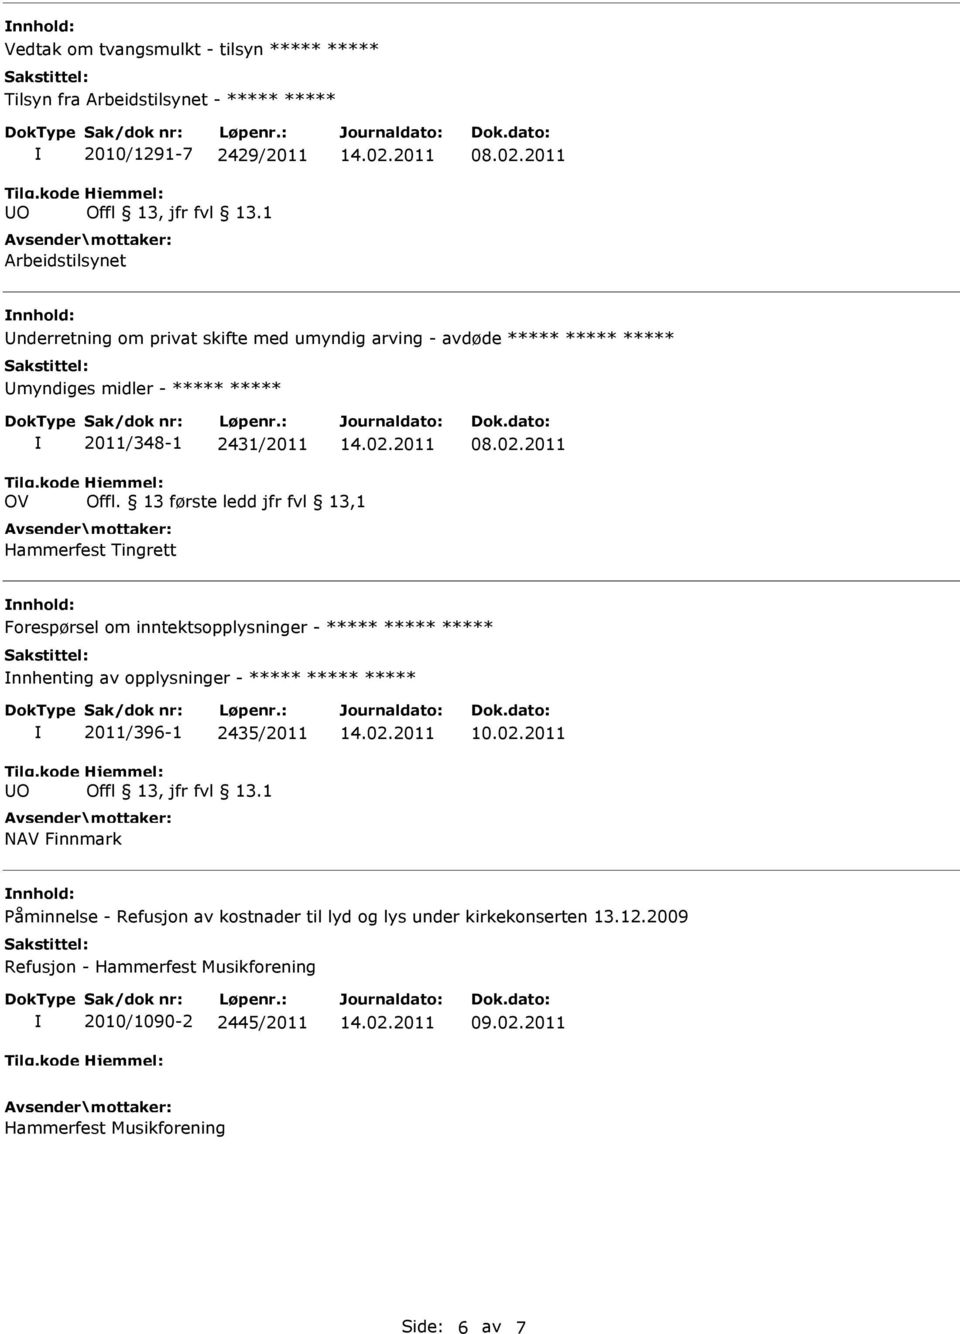 13 første ledd jfr fvl 13,1 Hammerfest Tingrett nnhold: Forespørsel om inntektsopplysninger - nnhenting av opplysninger - UO 2011/396-1 2435/2011 Offl